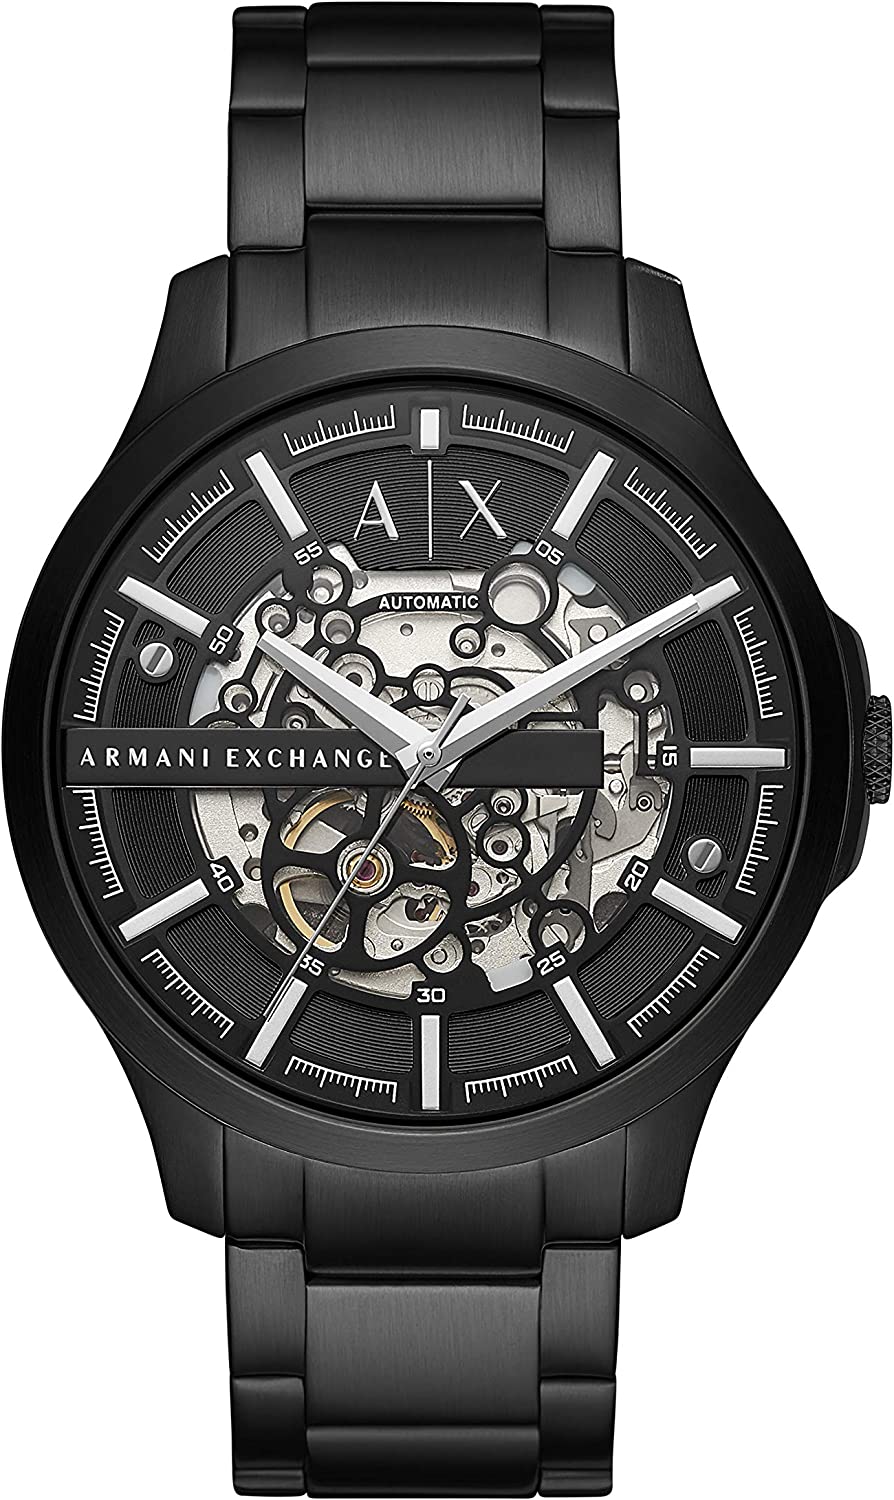 アルマーニ エクスチェンジ 腕時計 メンズ ブラック シンプル 機械式 自動巻き ARMANI EXCHANGE AX2418